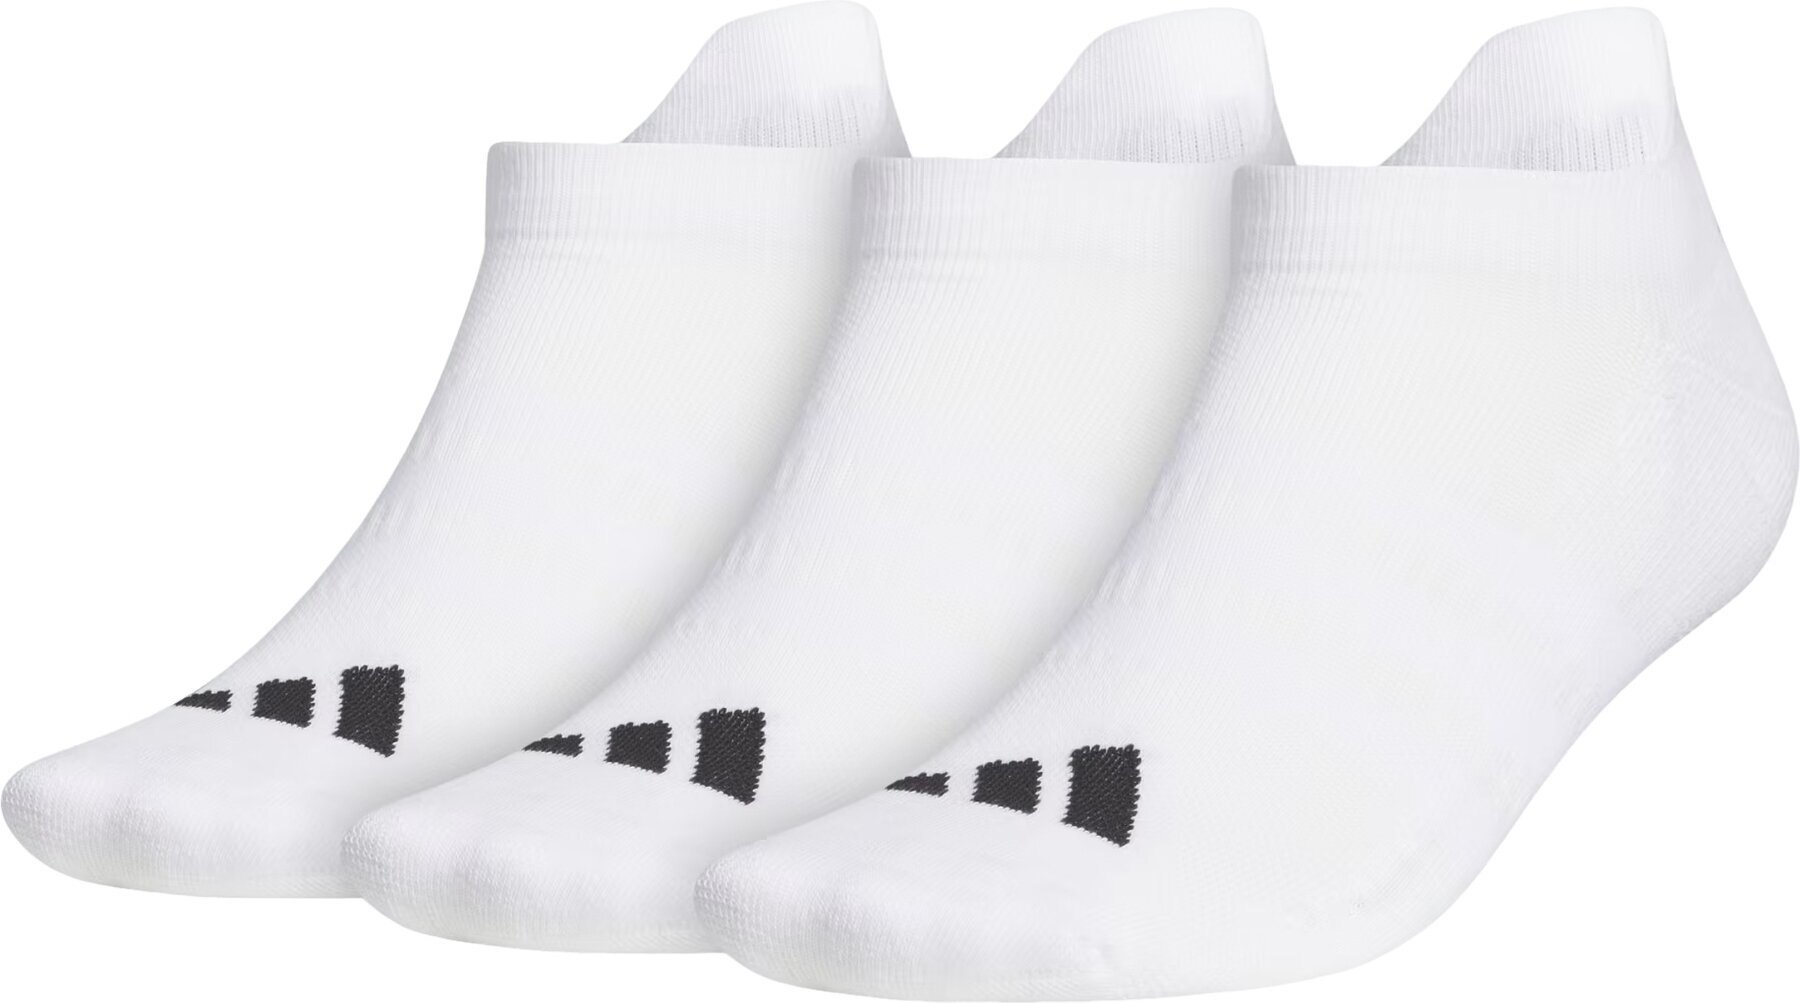 Meias Adidas Ankle Socks 3-Pairs Meias White 43-47